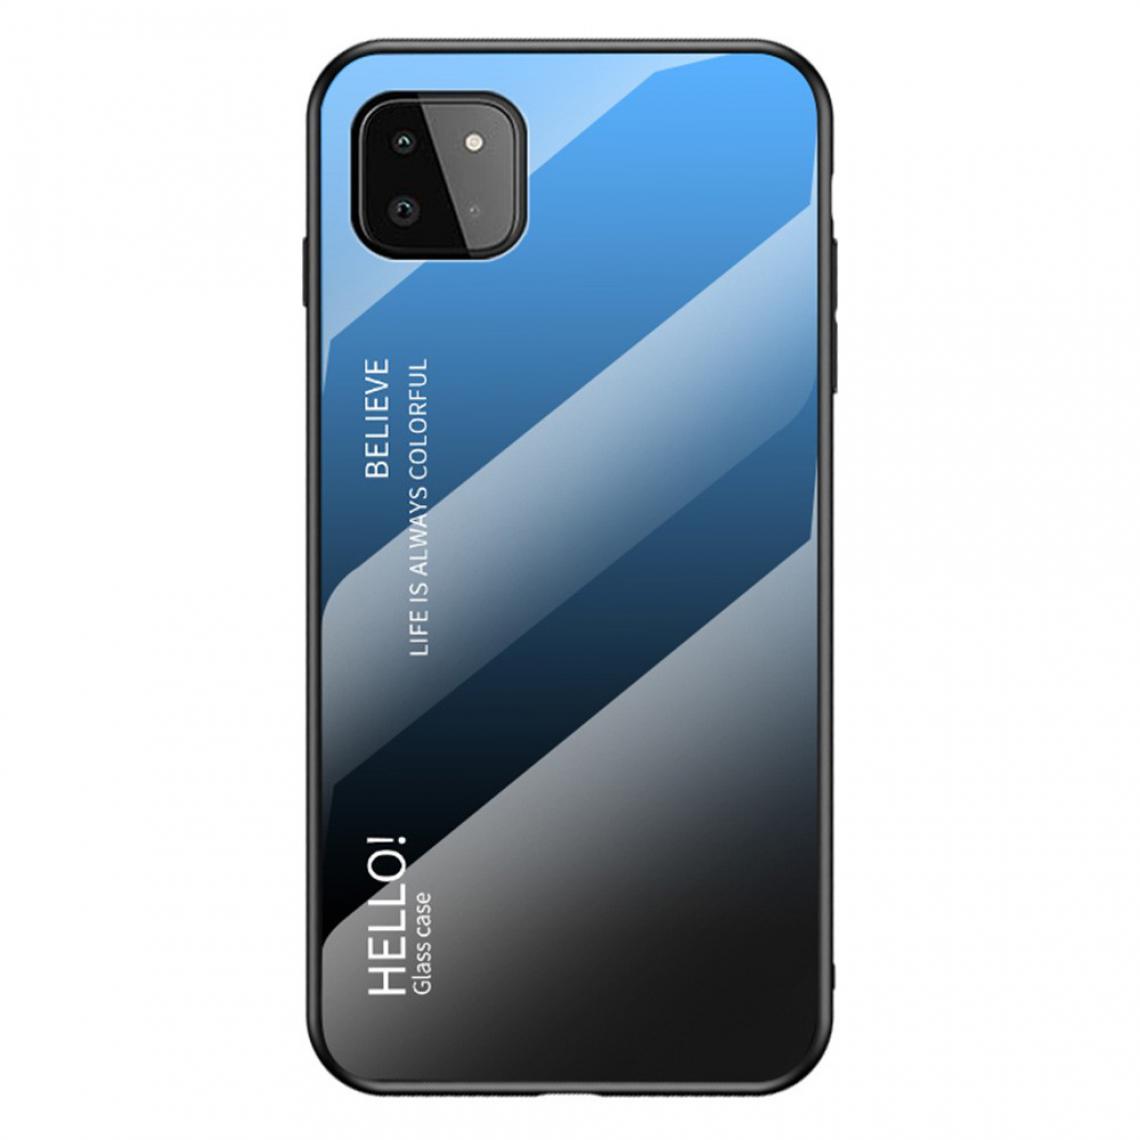 Other - Coque en TPU Conception de dégradé de couleur anti-rayures bleu/noir pour votre Samsung Galaxy A22 5G (EU Version) - Coque, étui smartphone